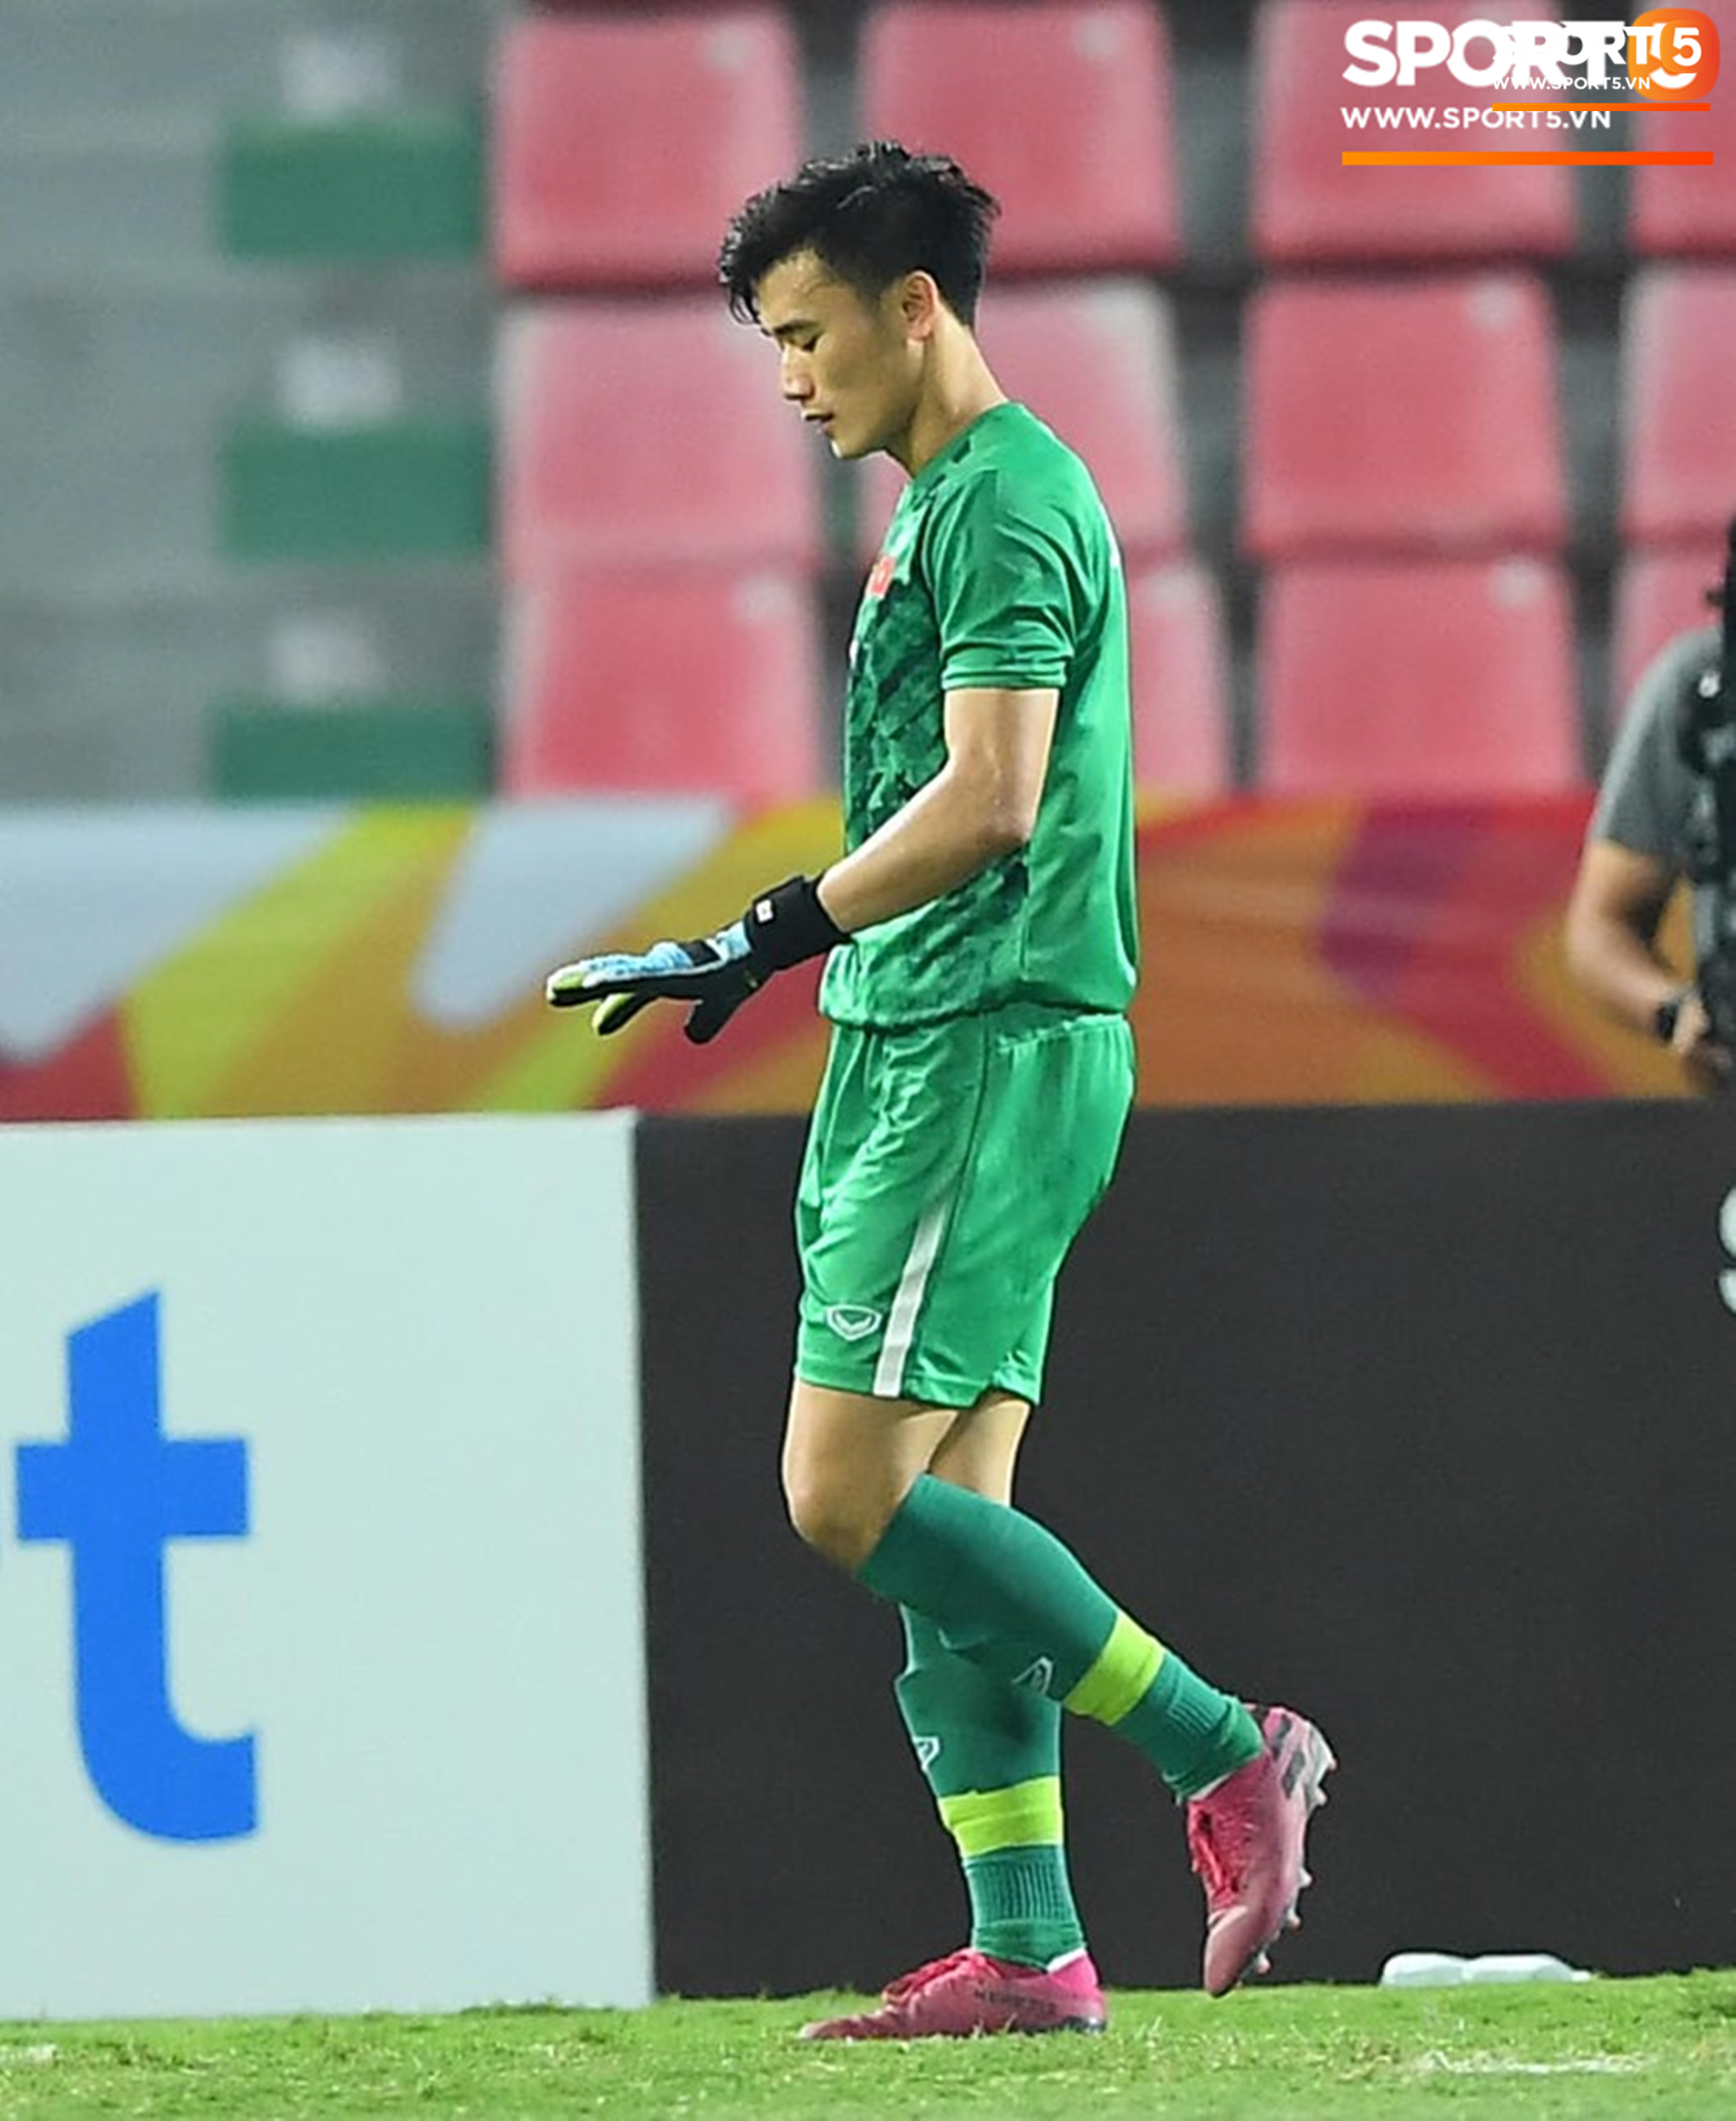 Khoảnh khắc đáng buồn nhất VCK U23 châu Á 2020: Đình Trọng nhận thẻ đỏ, U23 Việt Nam mất hết sau trận đấu với CHDCND Triều Tiến - Ảnh 7.